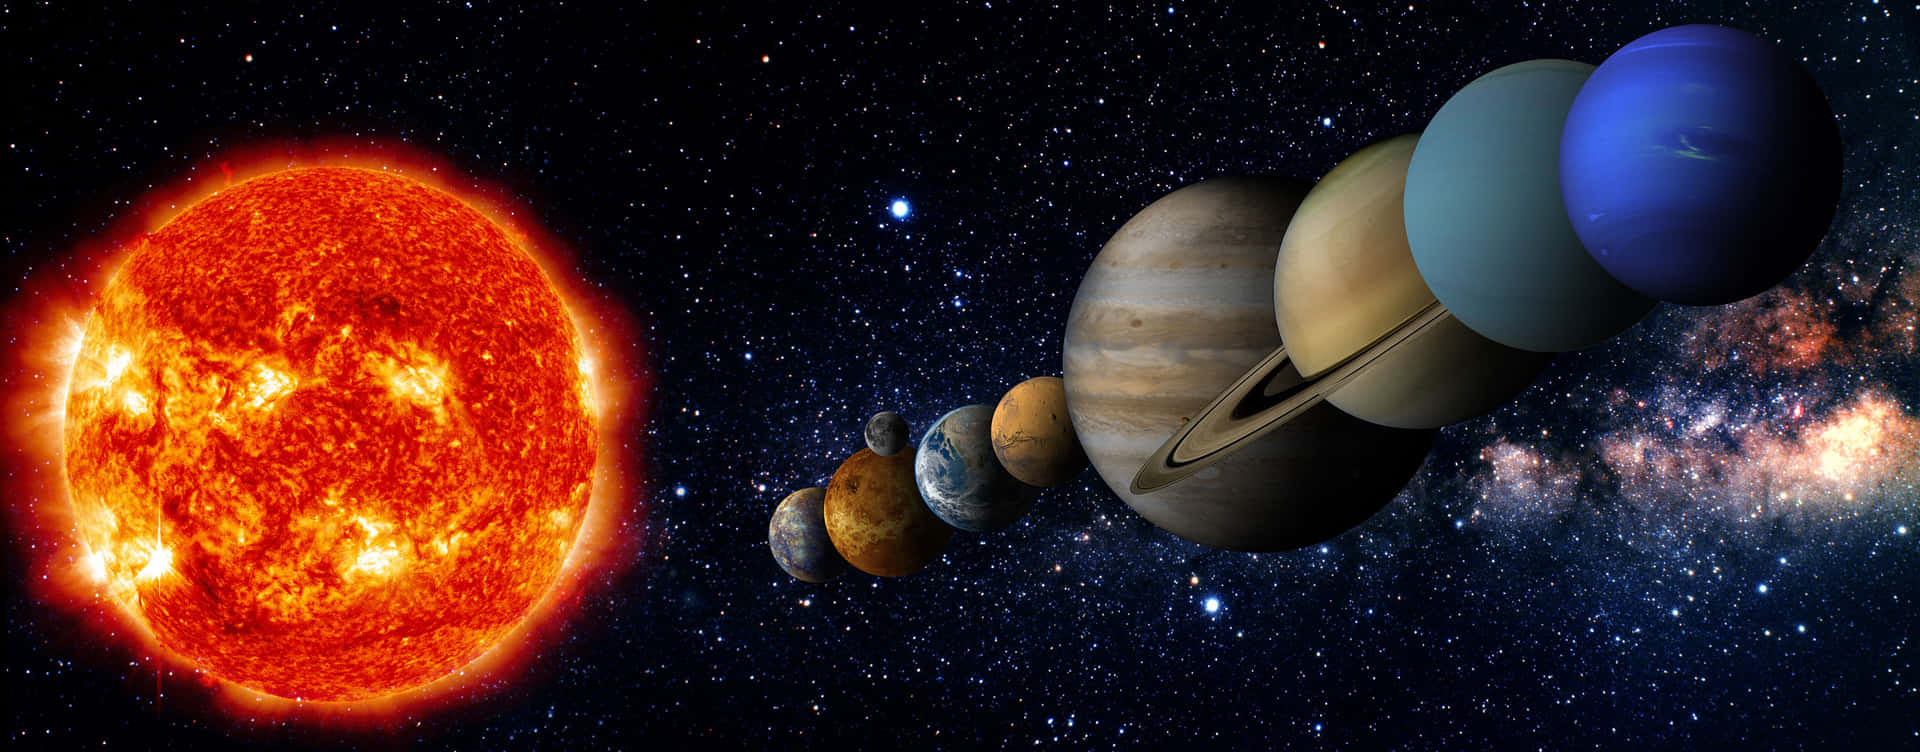 Imagemdos Planetas Alinhados No Sistema Solar.